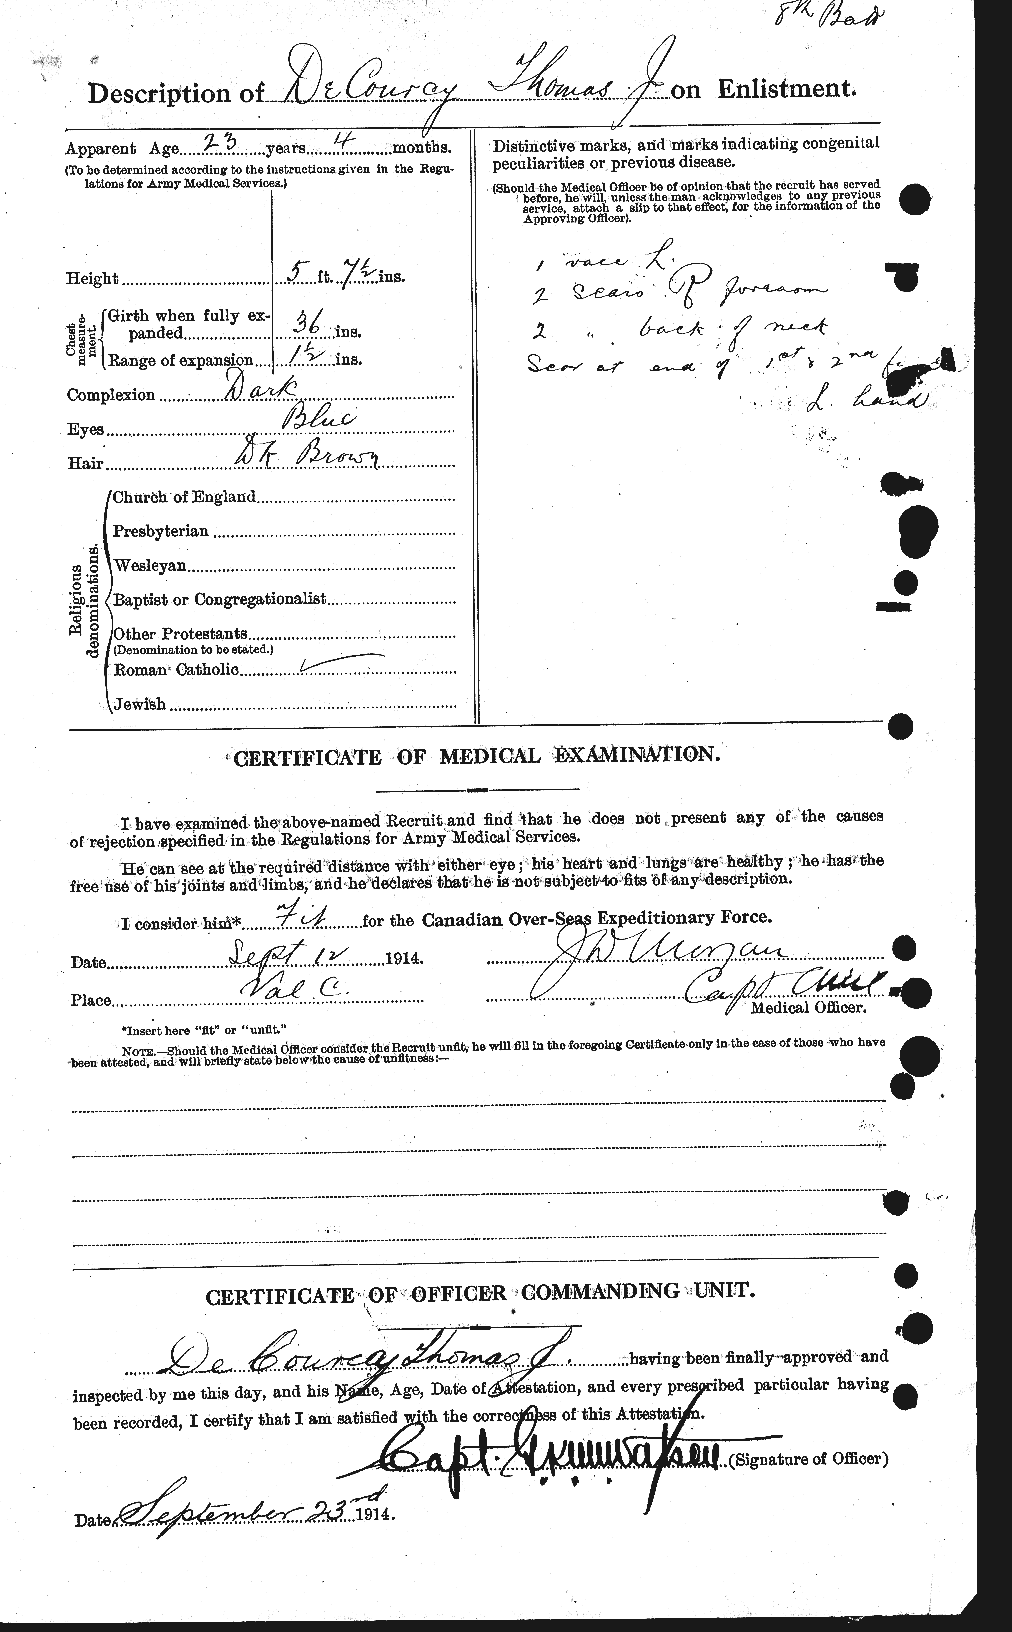 Dossiers du Personnel de la Première Guerre mondiale - CEC 285650b